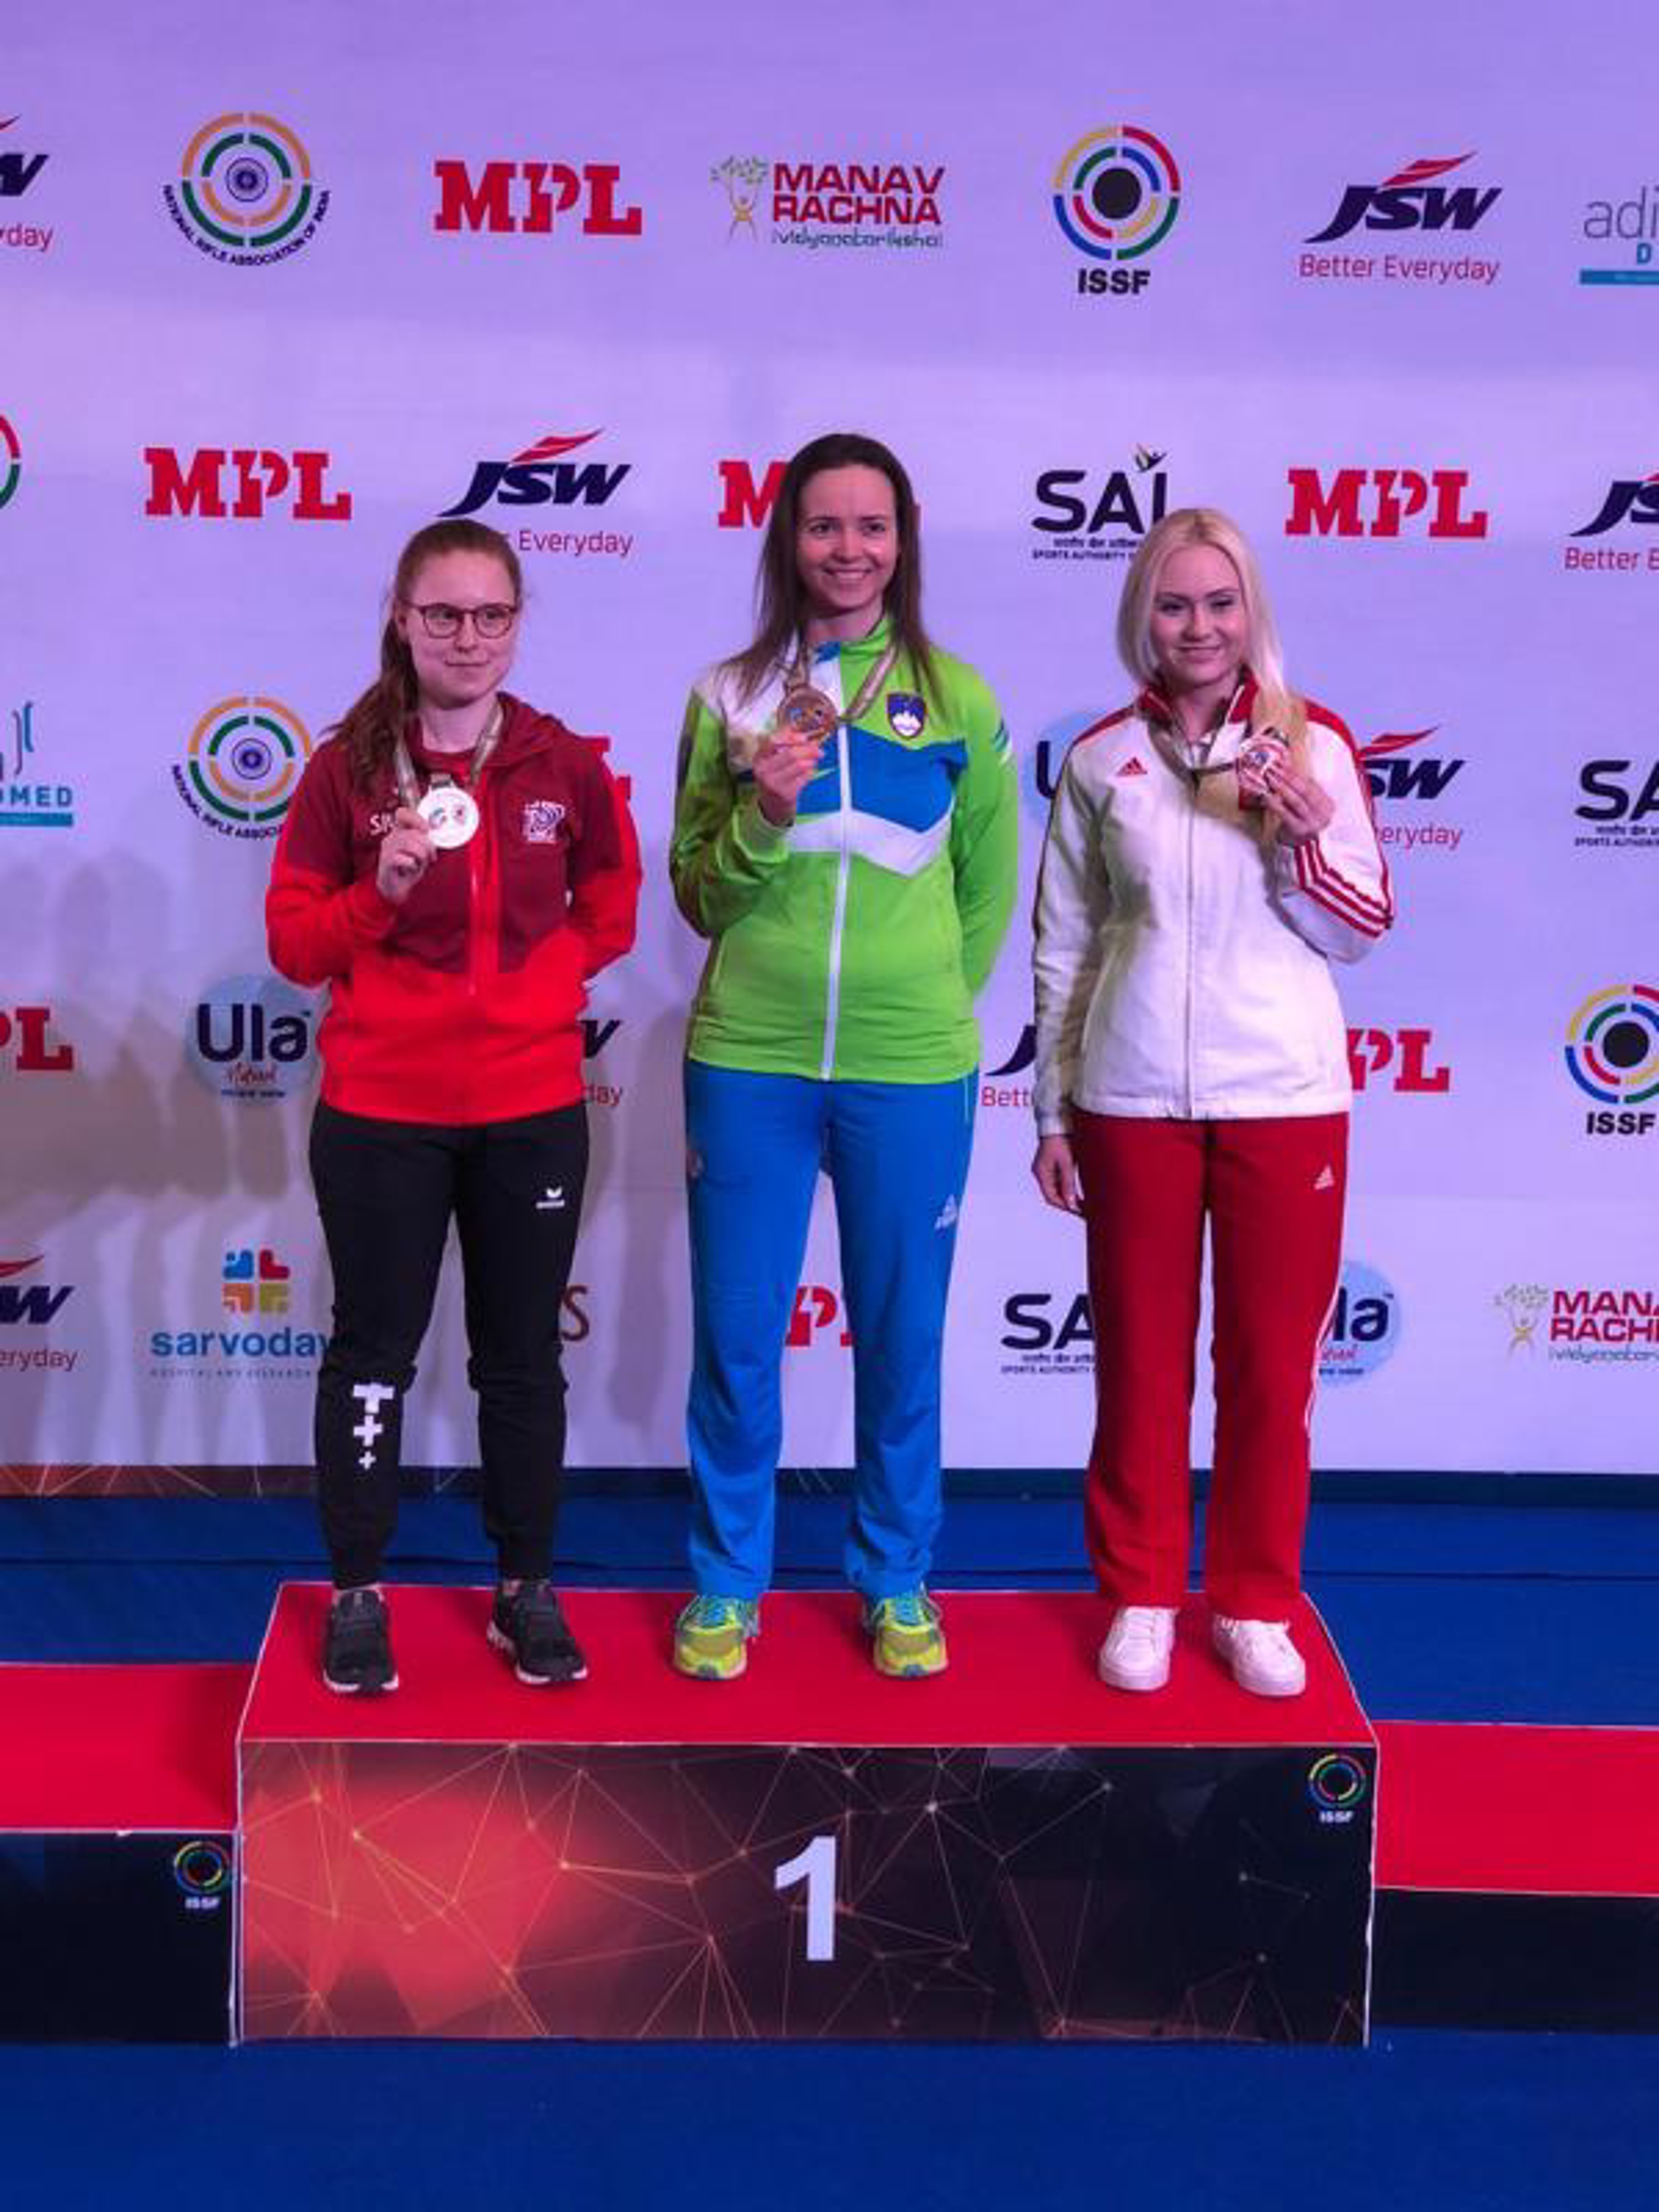 Le podium féminin Carabine 50m trois positions (de g. à dr.): Nina Christen (2nde), Ziva Dvorska victorieuse (SLO) et Aneta Stankiewicz (POL).